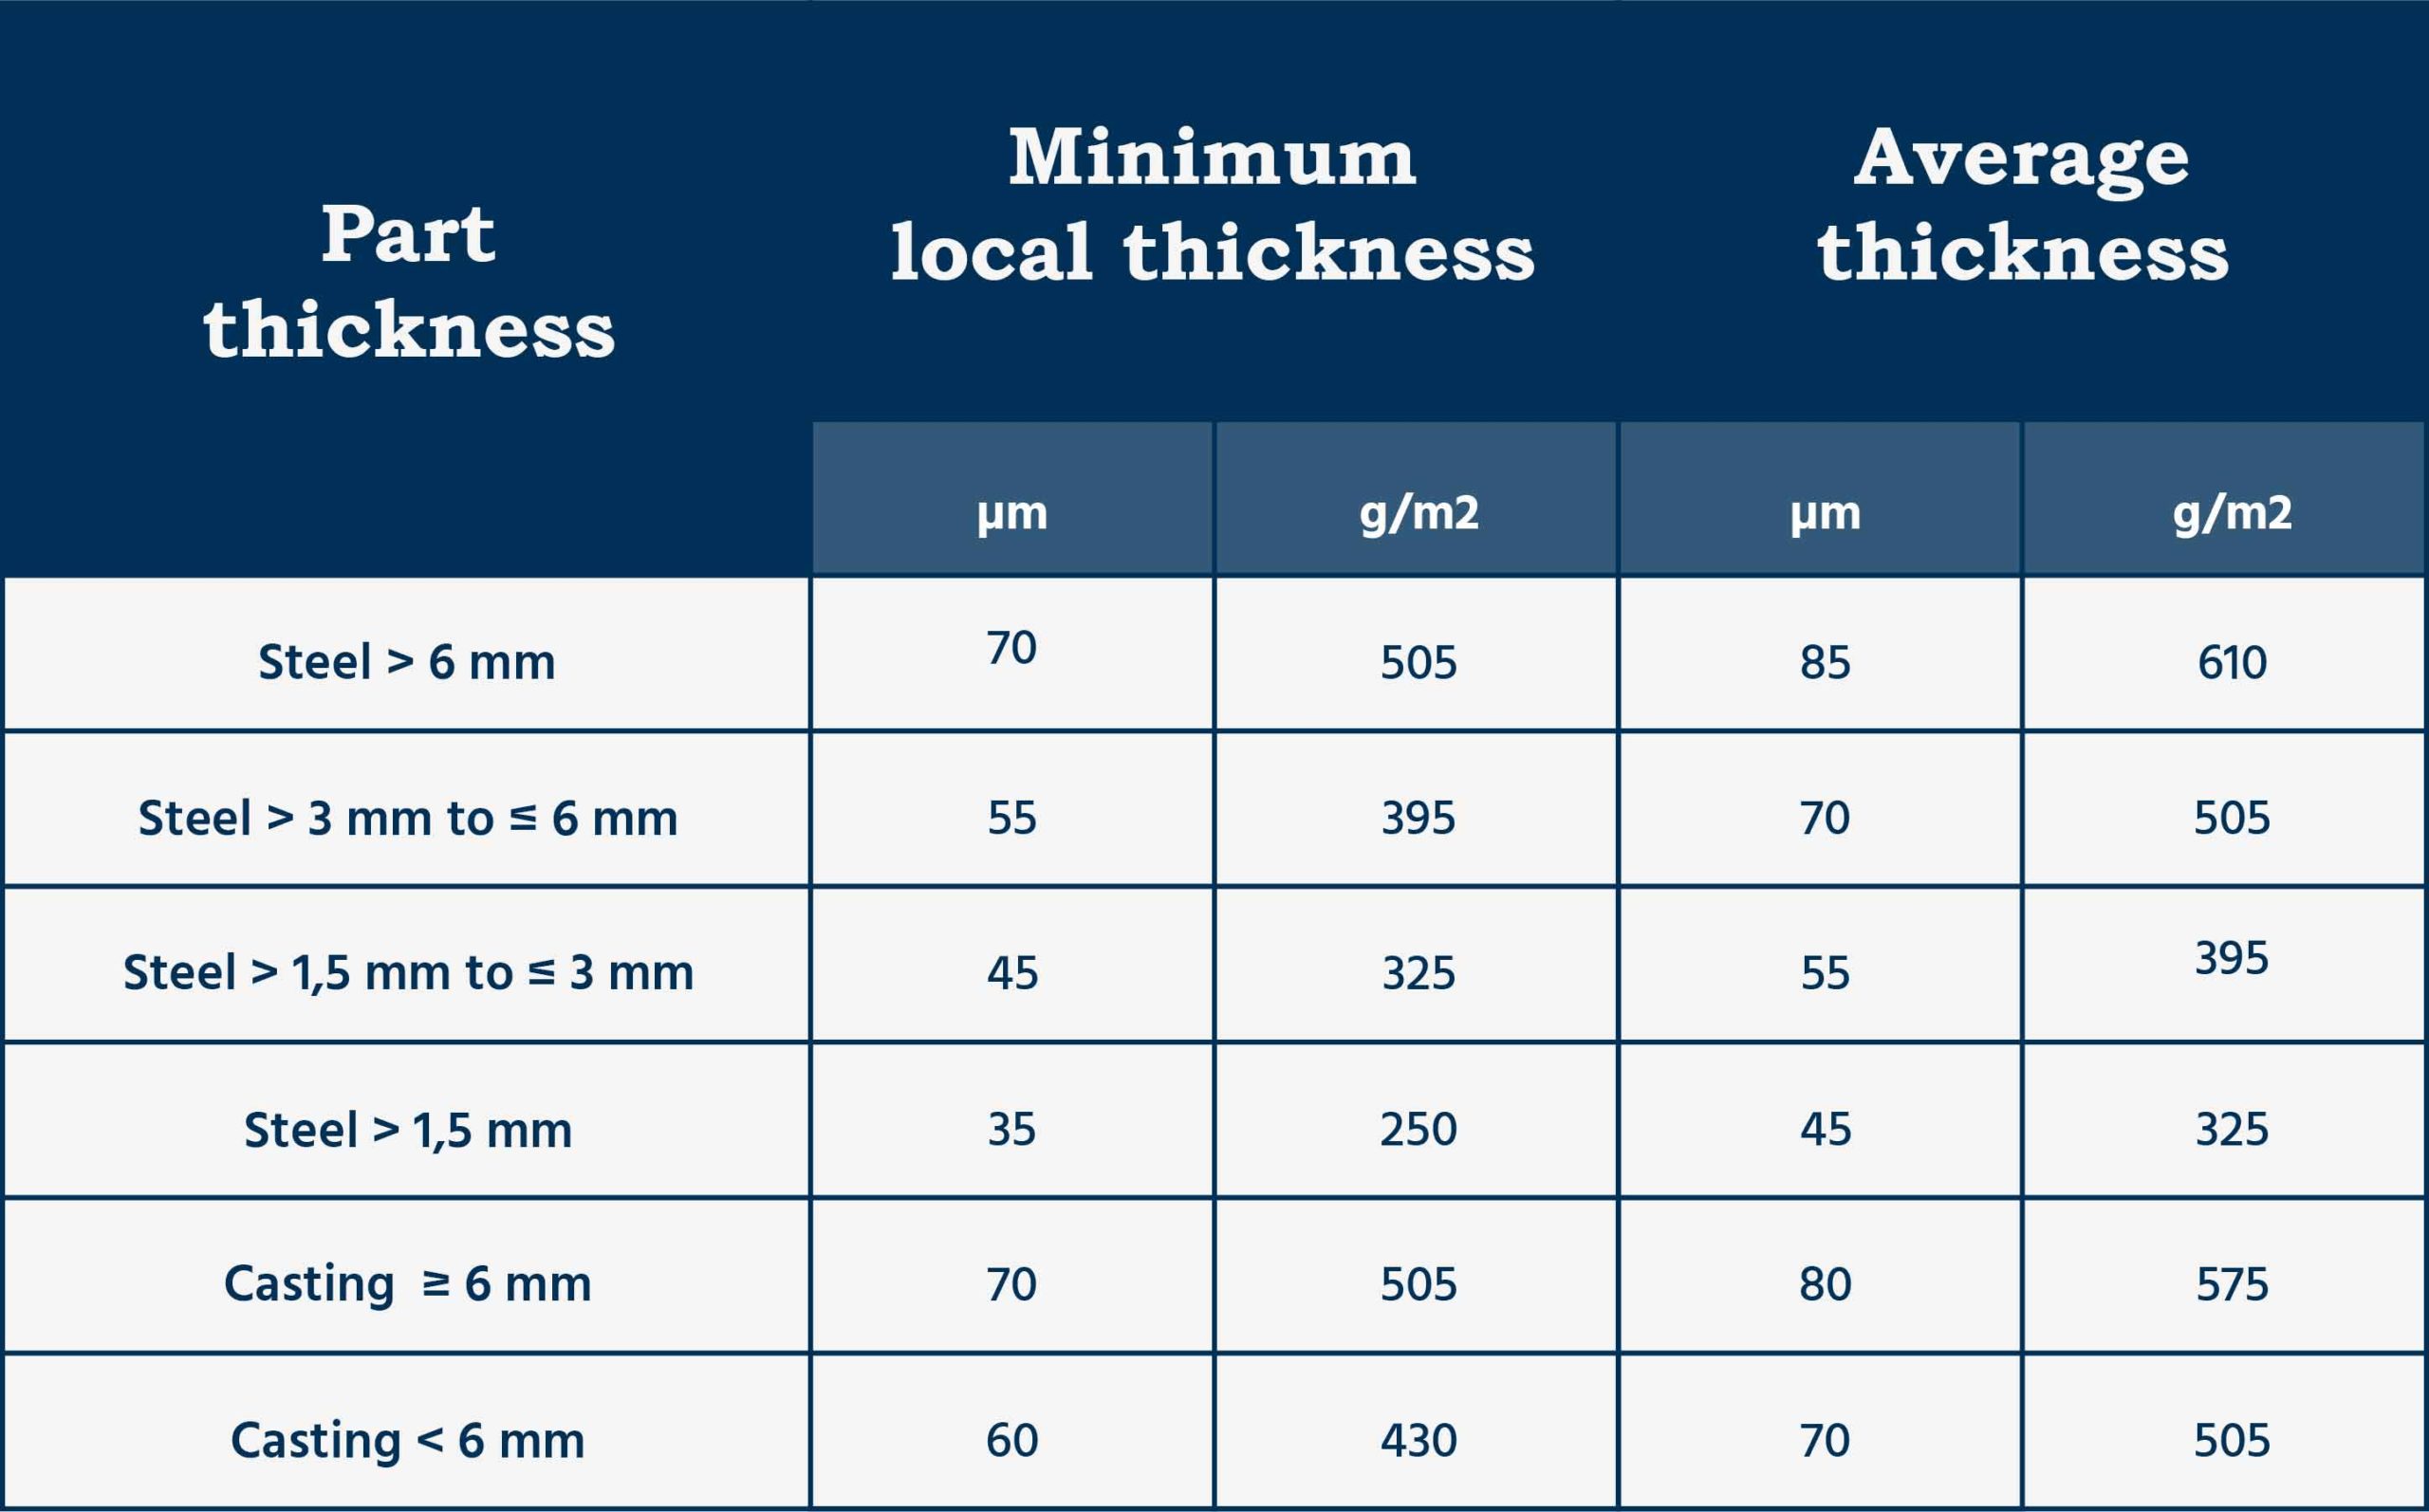 Dip Galvanizing Thickness Chart